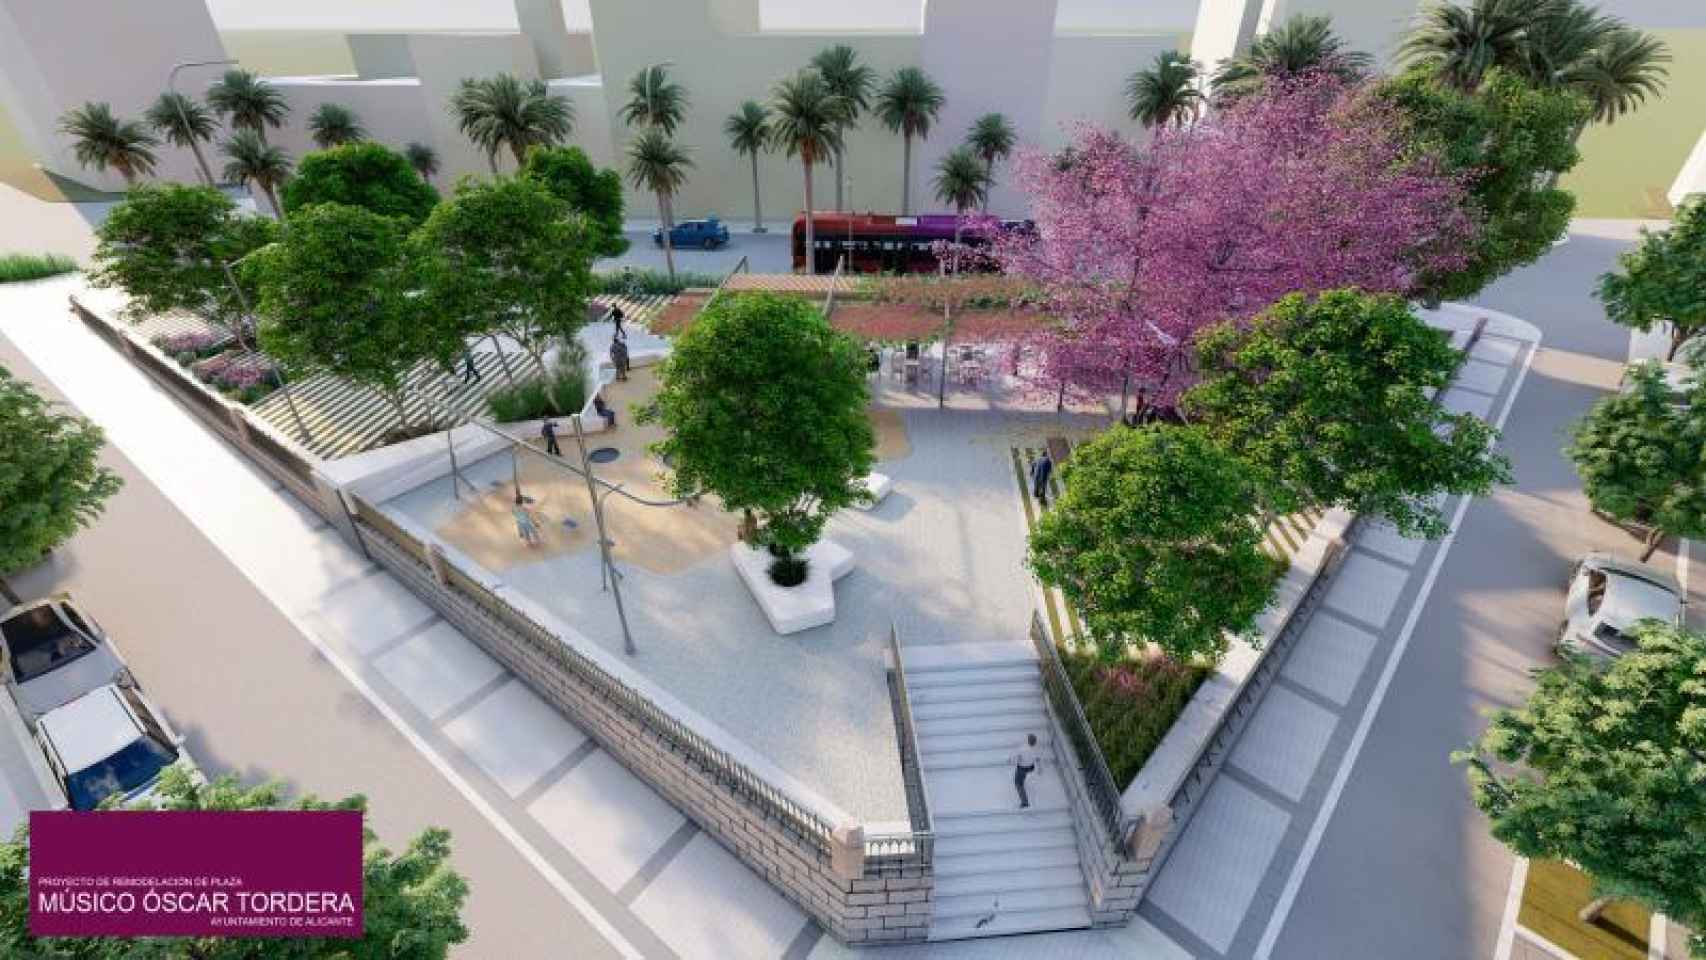 Proyecto de la plaza Músico Óscar Tordera.